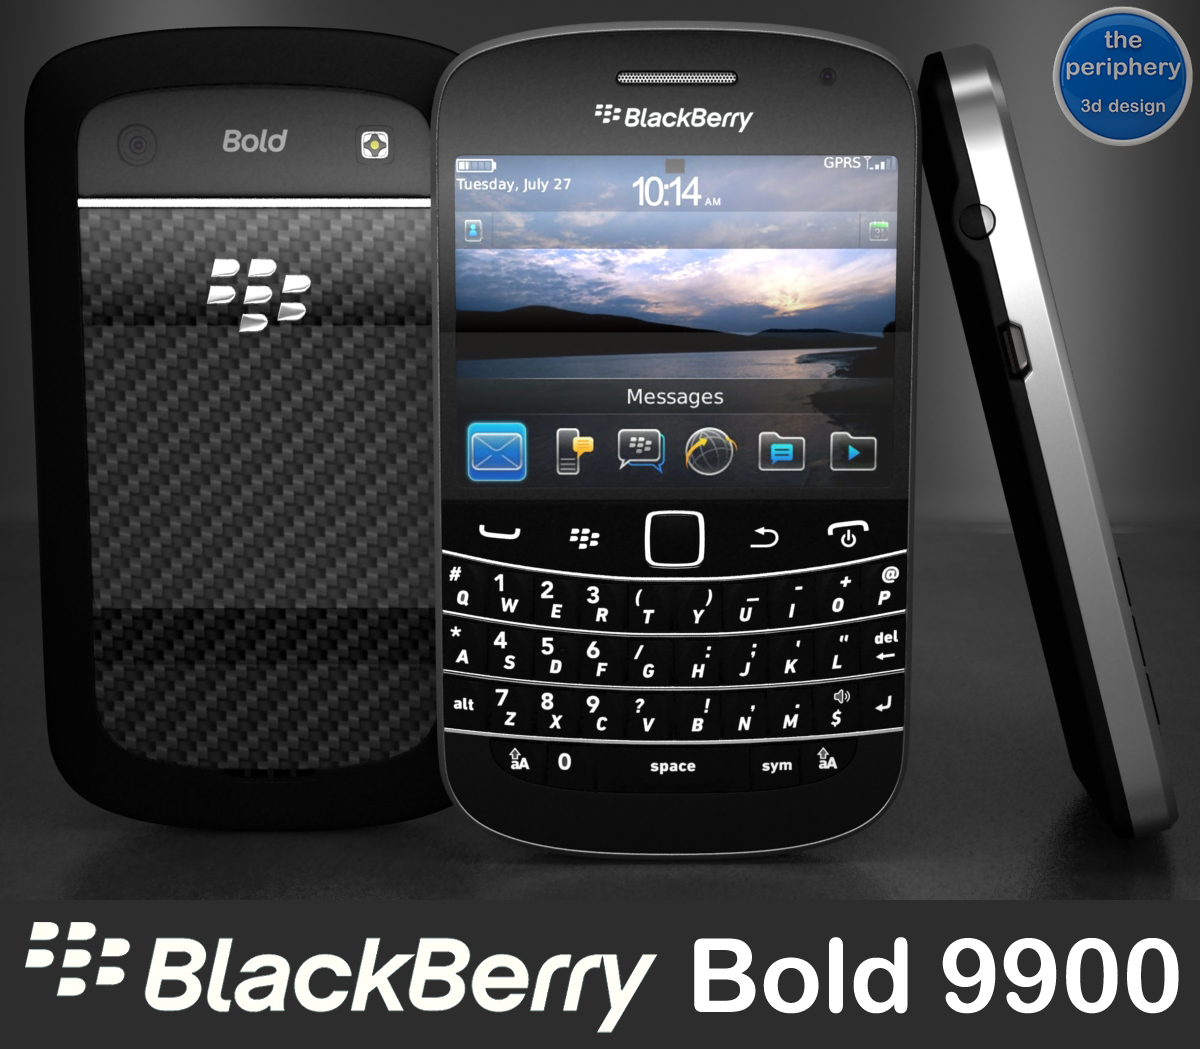 blackberry_bold_9900_smartphone-3d-model-25421-128349-jpg.16805